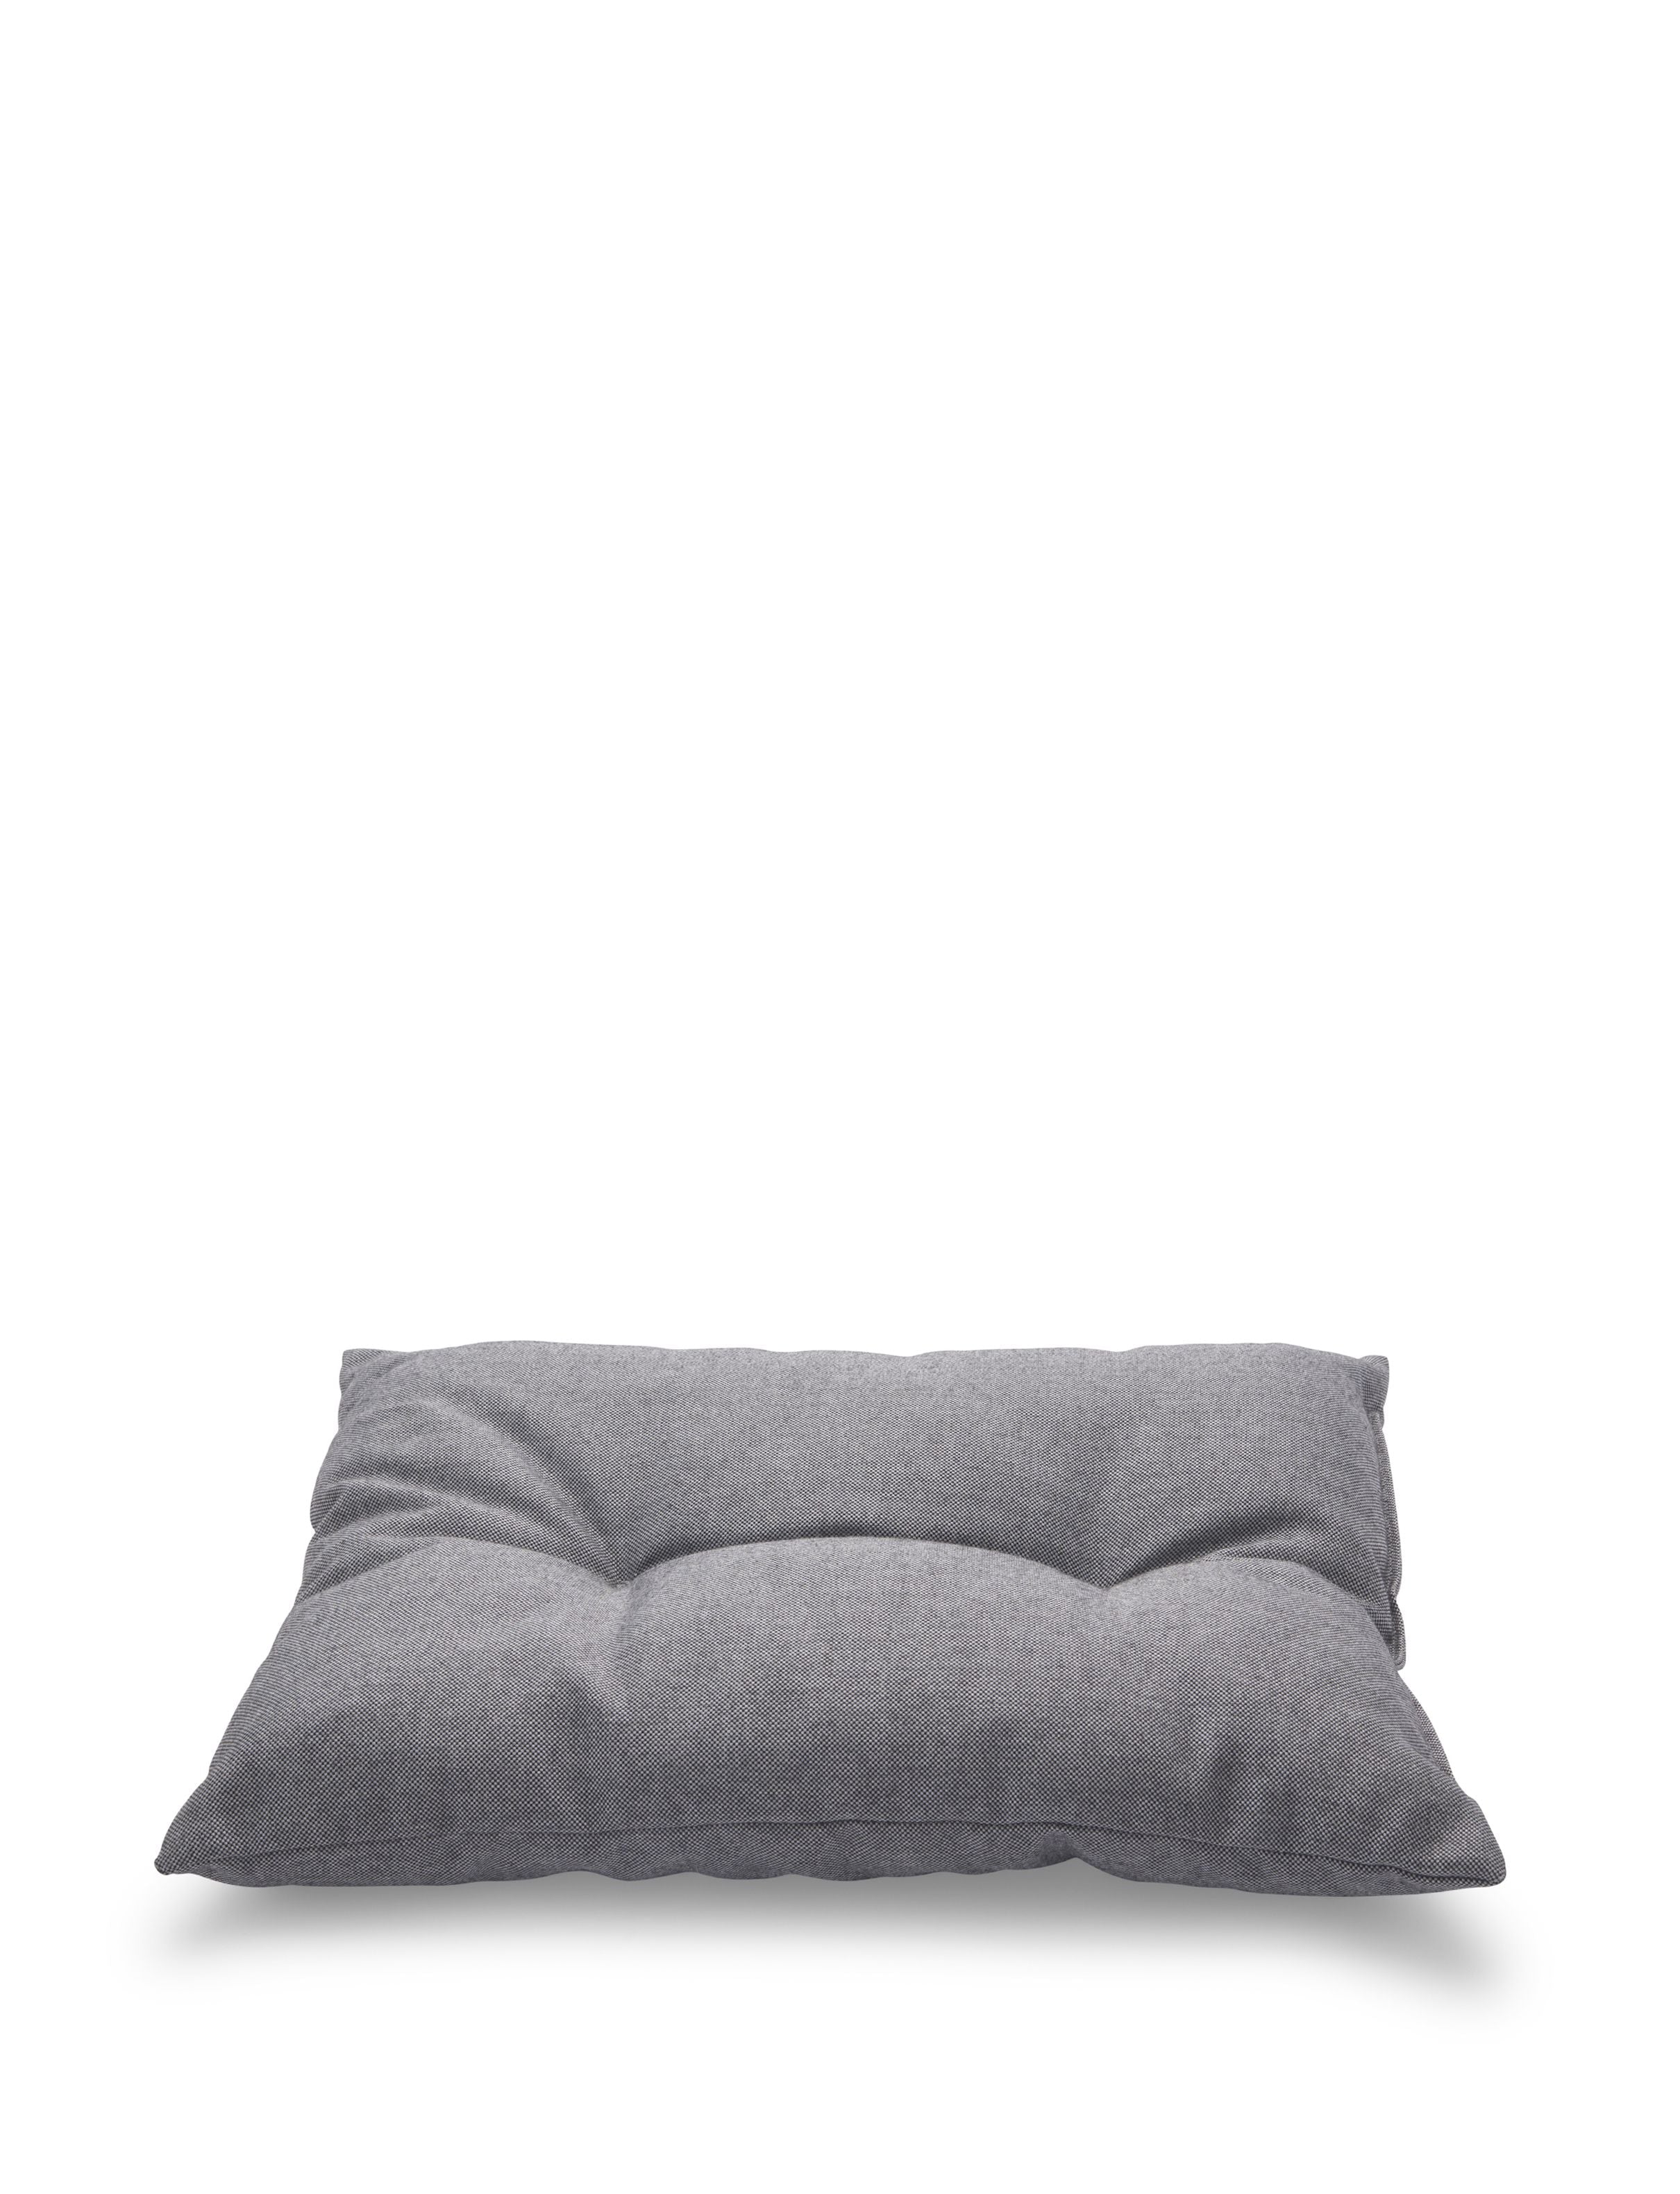 Skagerak Barriere Cushion 55x43 cm, as